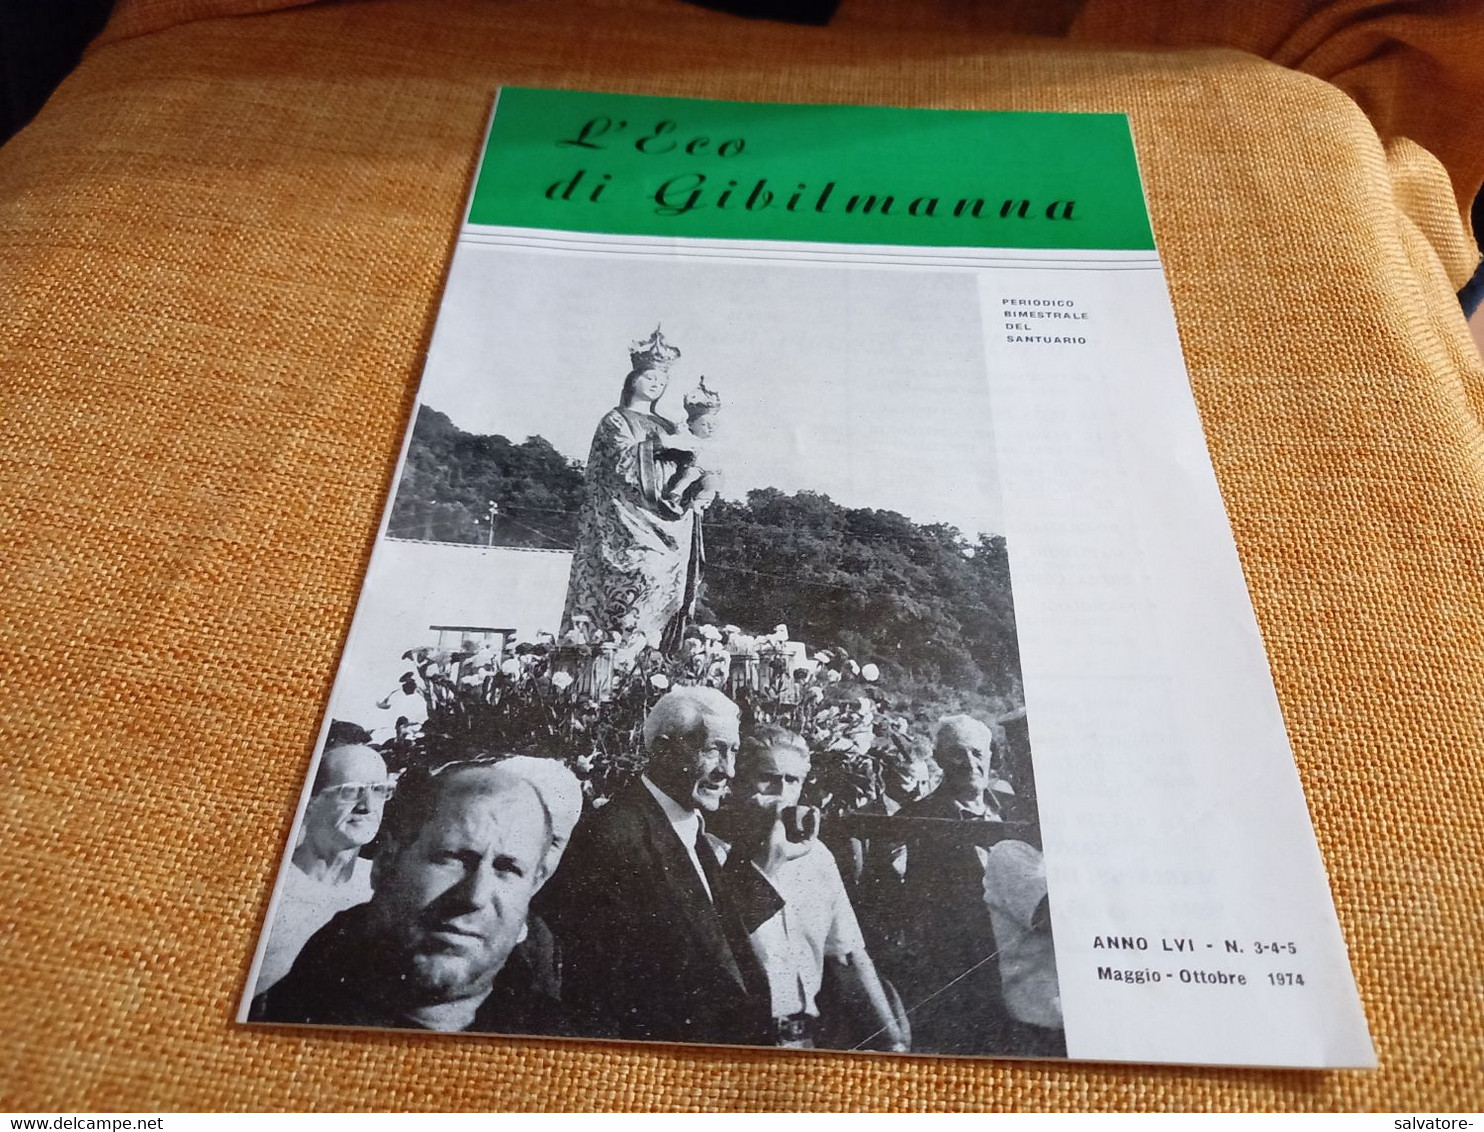 GIORNALE L'ECO DI GIBILMANNA (PA) PERIODICO BIMESTRALE DEL SANTUARIO 1974 - Godsdienst